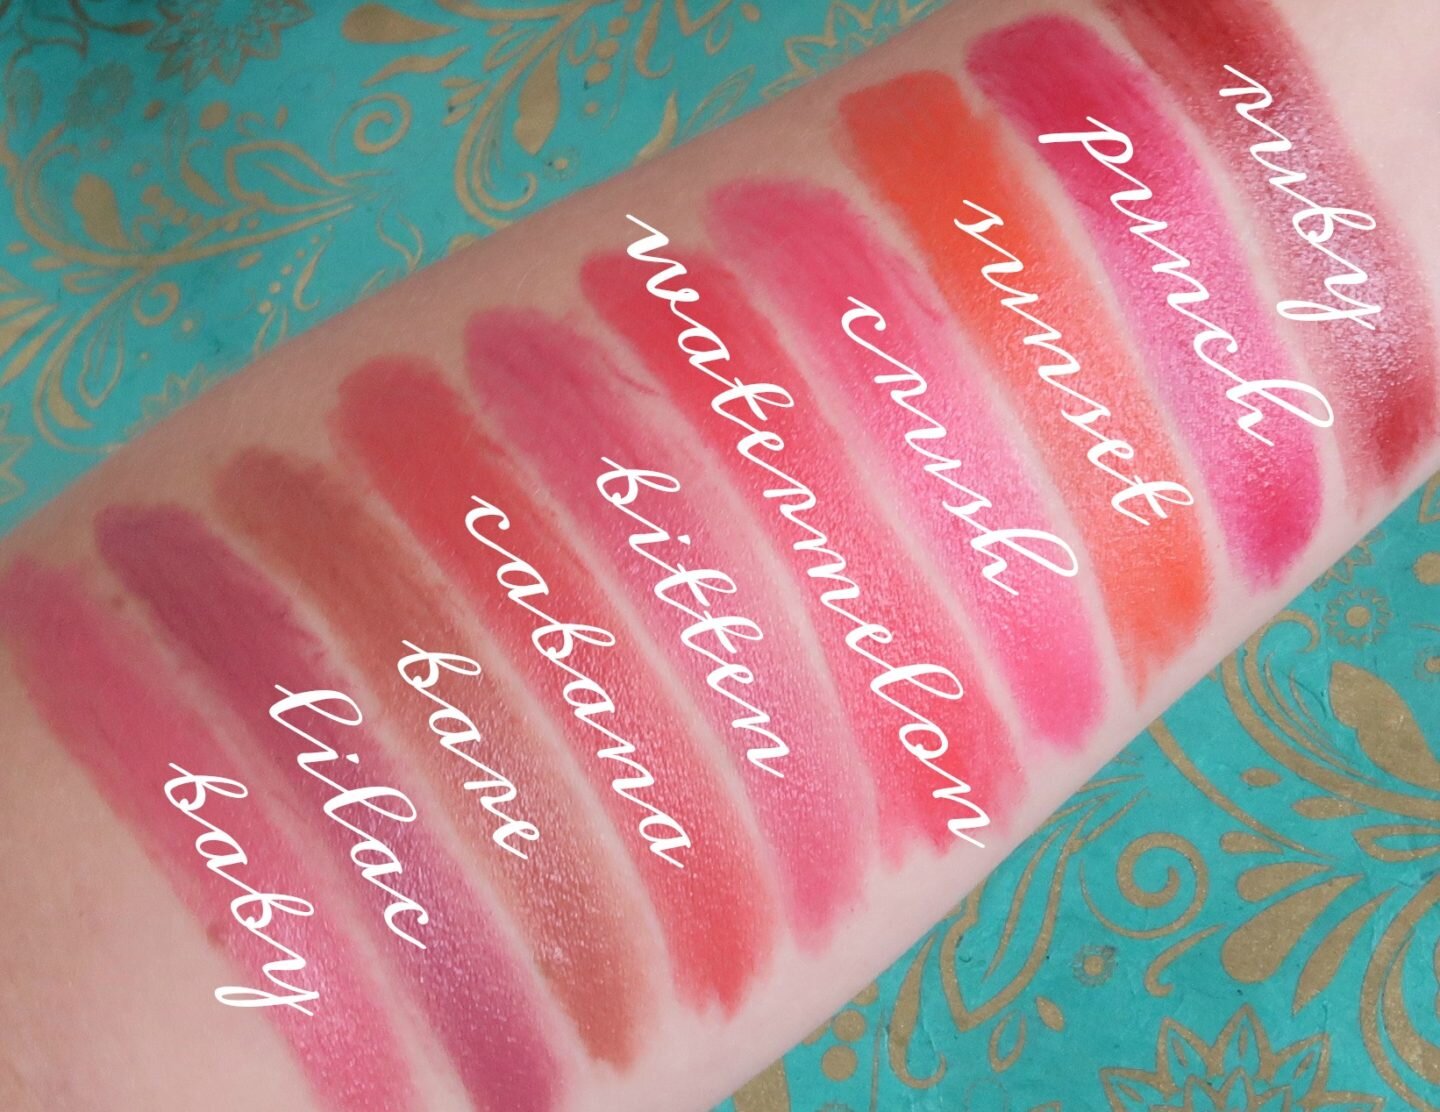 Bobbi Brown Crush Lipstick Swatches Pinks